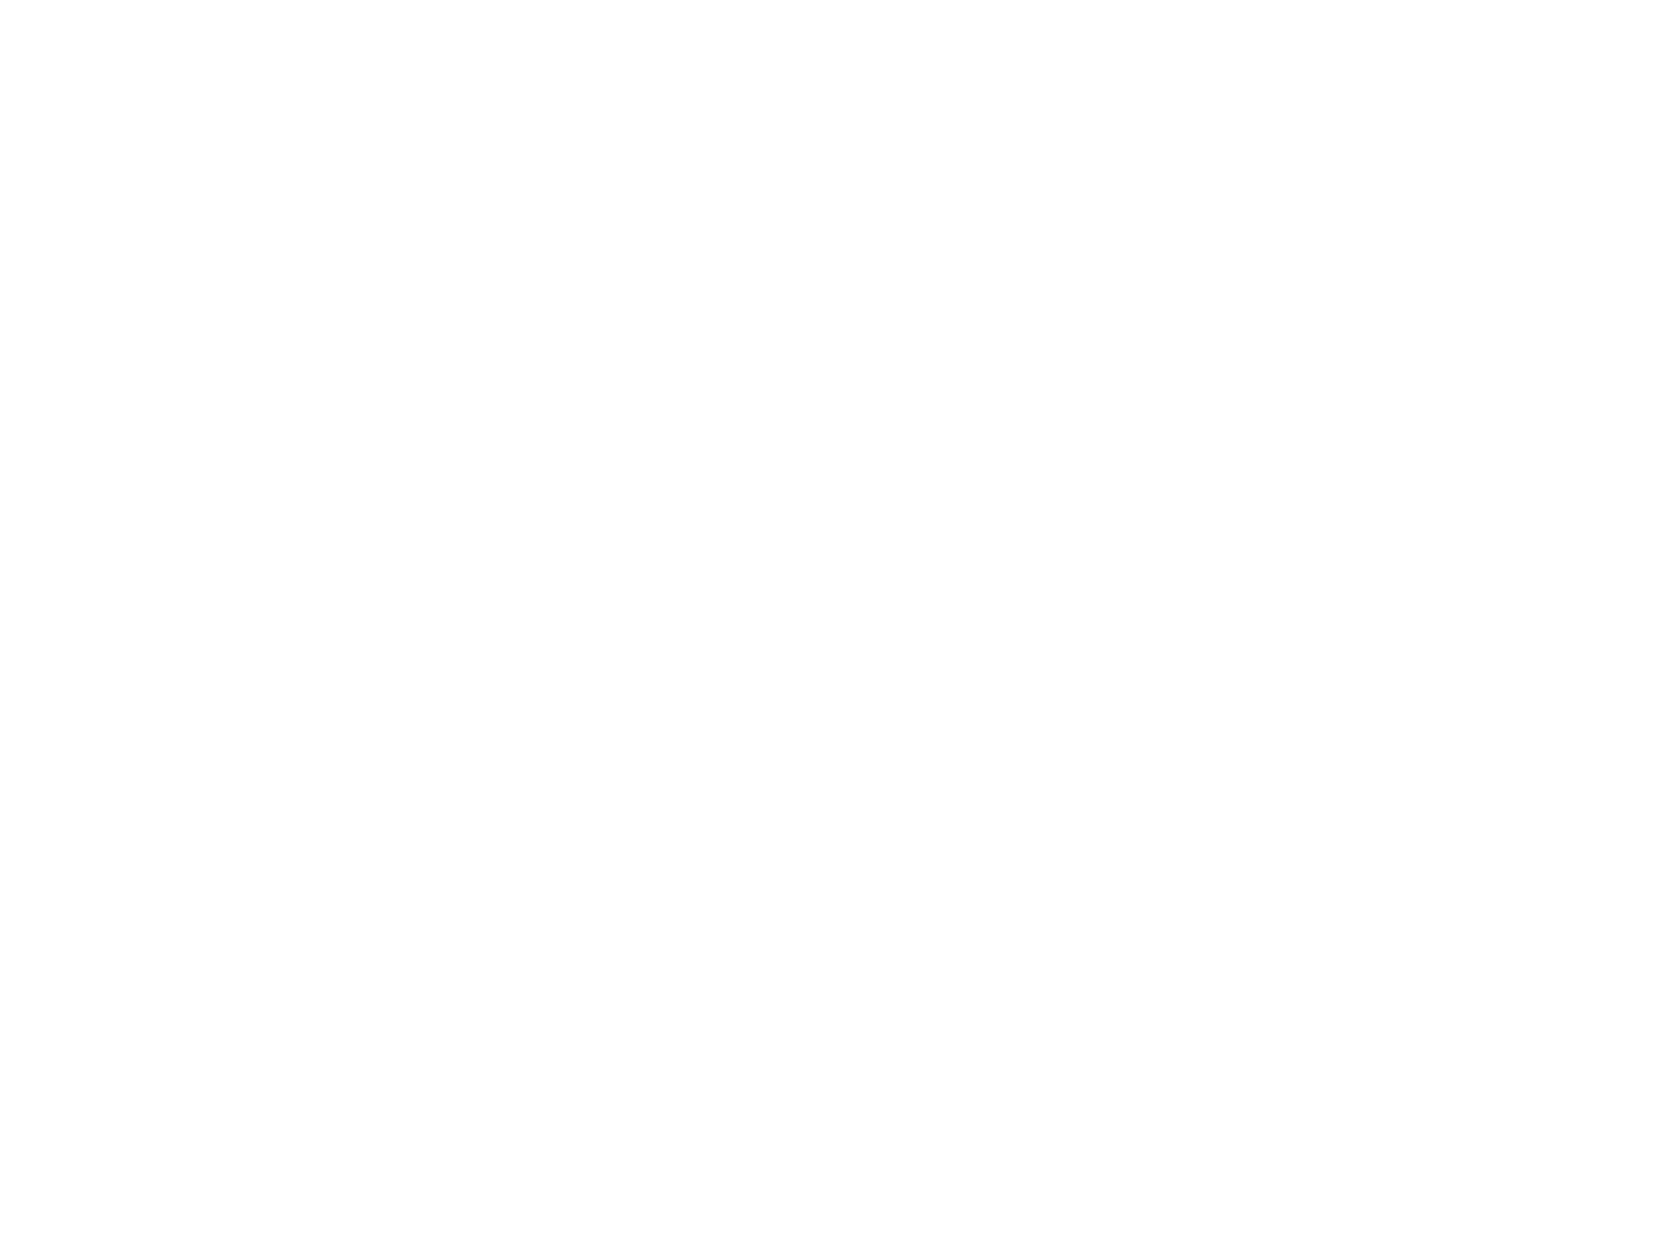 Cеминар Cервис, лояльность, клиентоориентированность рецепты успешного социального бизнеса, Денис Богатов, Москва, 2018 год